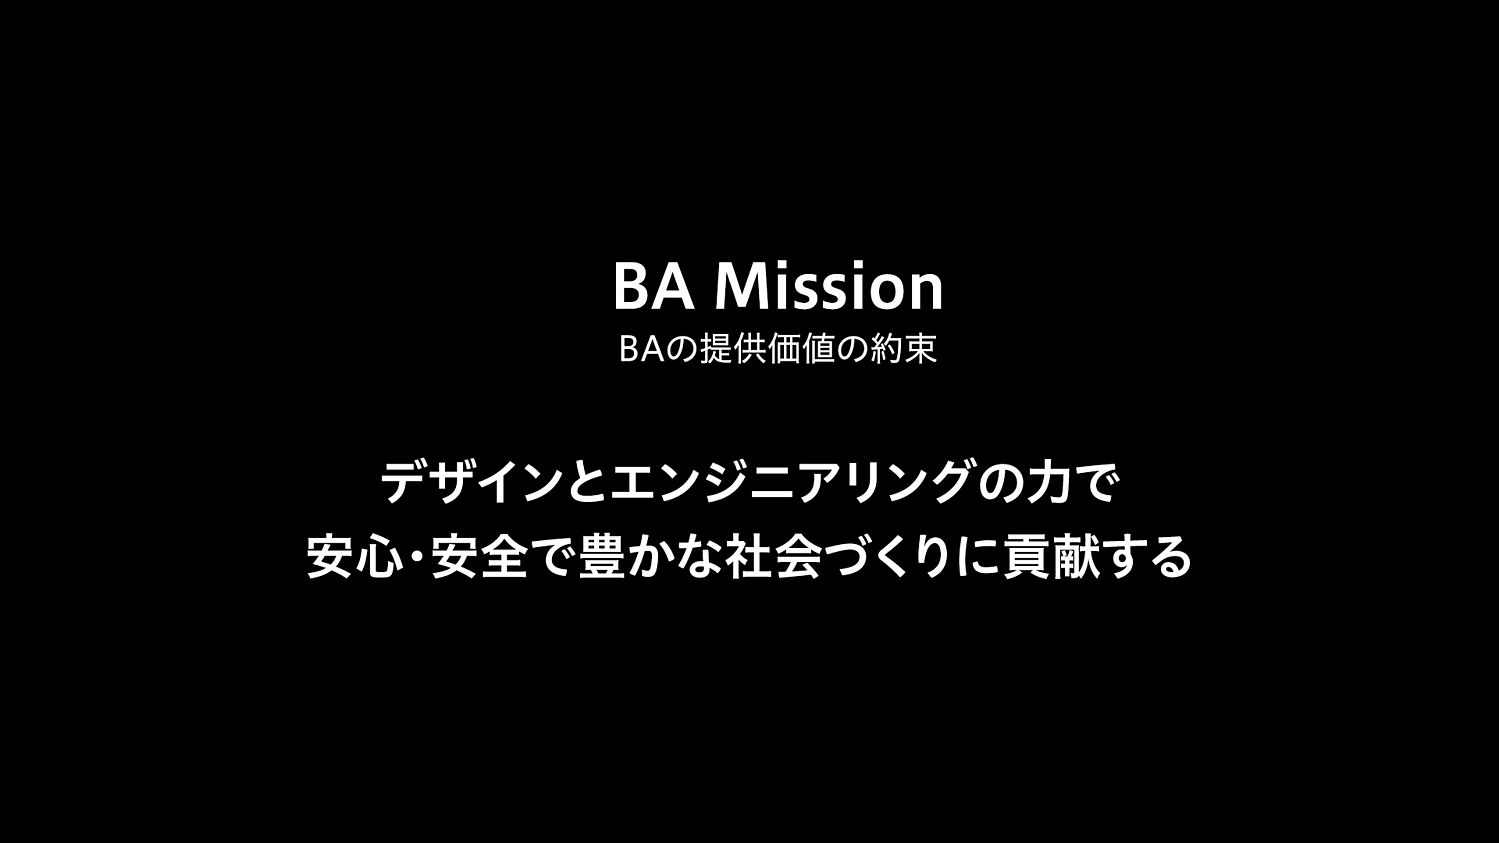 BA Mission（BAの提供価値の約束）：デザインとエンジニアリングの力で安心・安全で豊かな社会づくりに貢献する